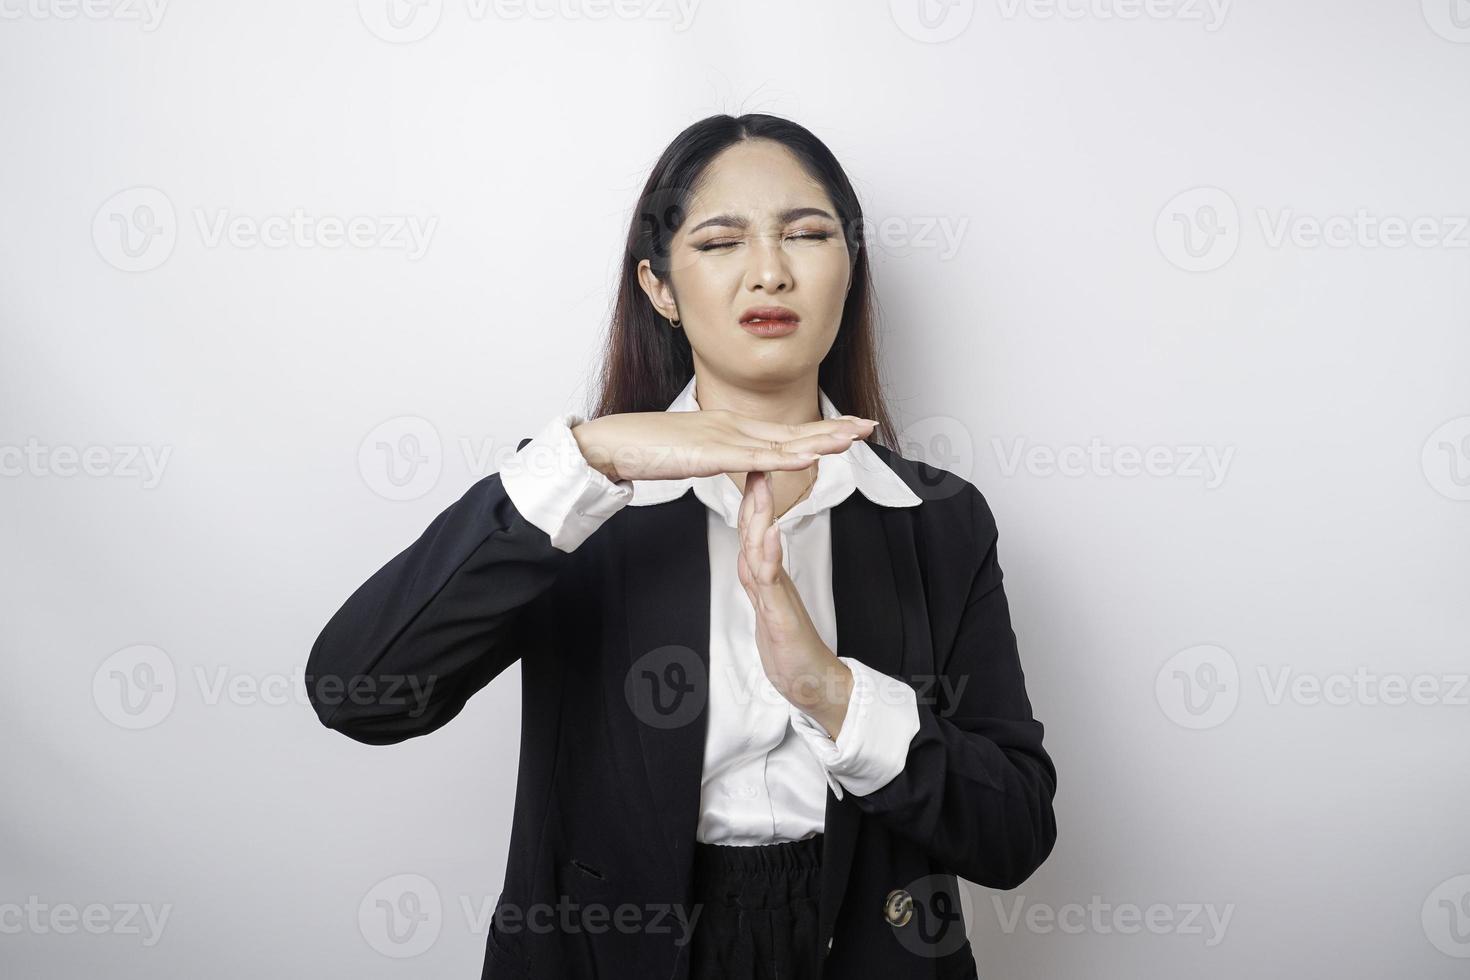 femme d'affaires asiatique hispanique portant un costume noir faisant un geste de temps mort avec les mains, visage frustré et sérieux photo